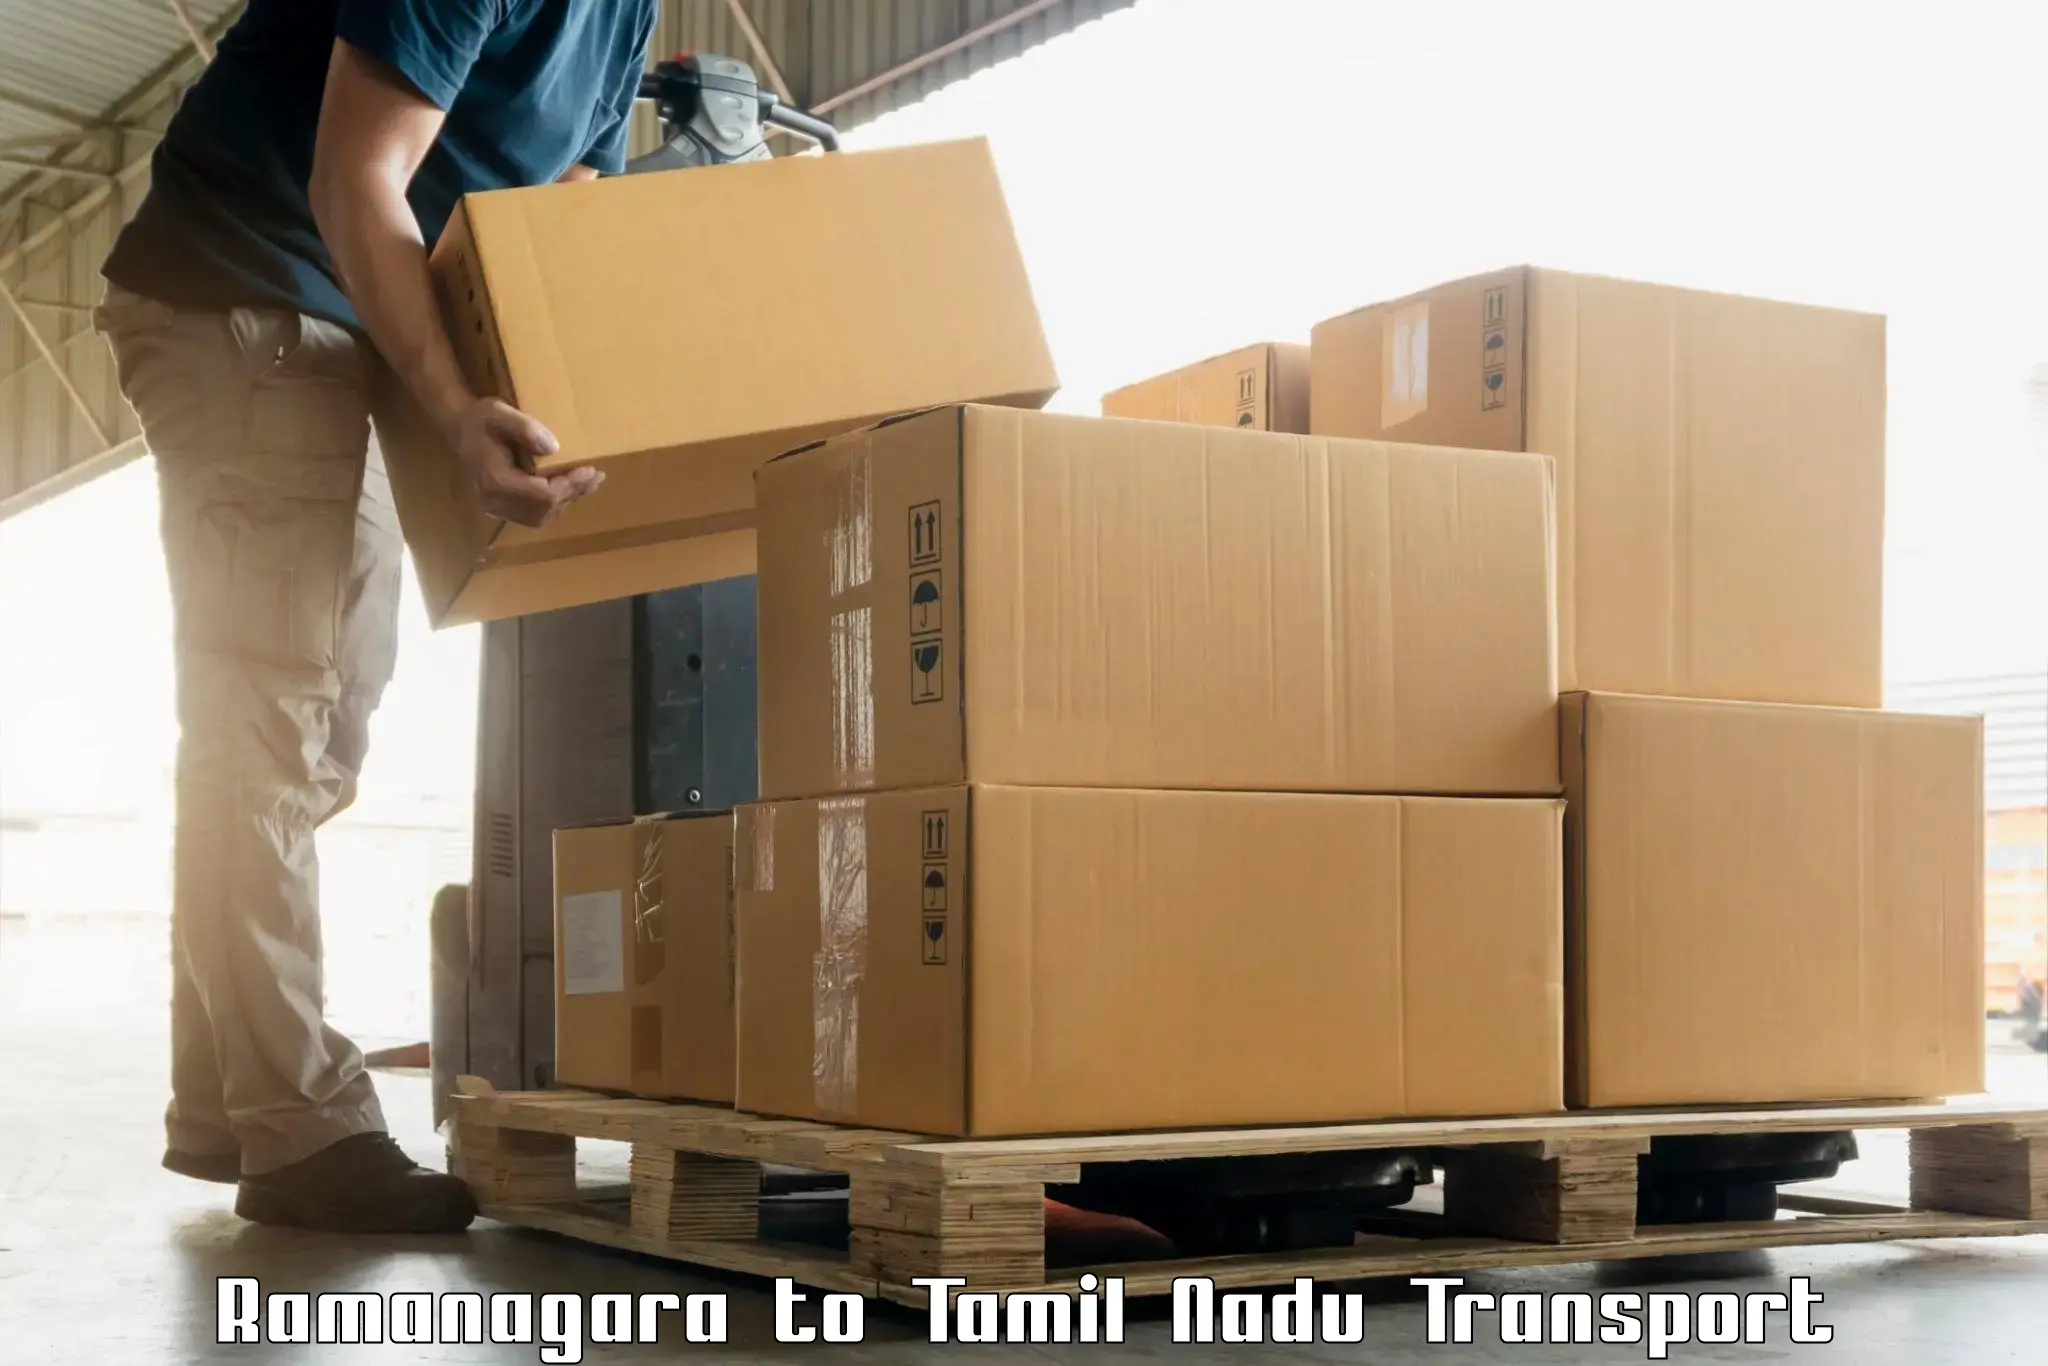 Container transport service Ramanagara to Madukkarai